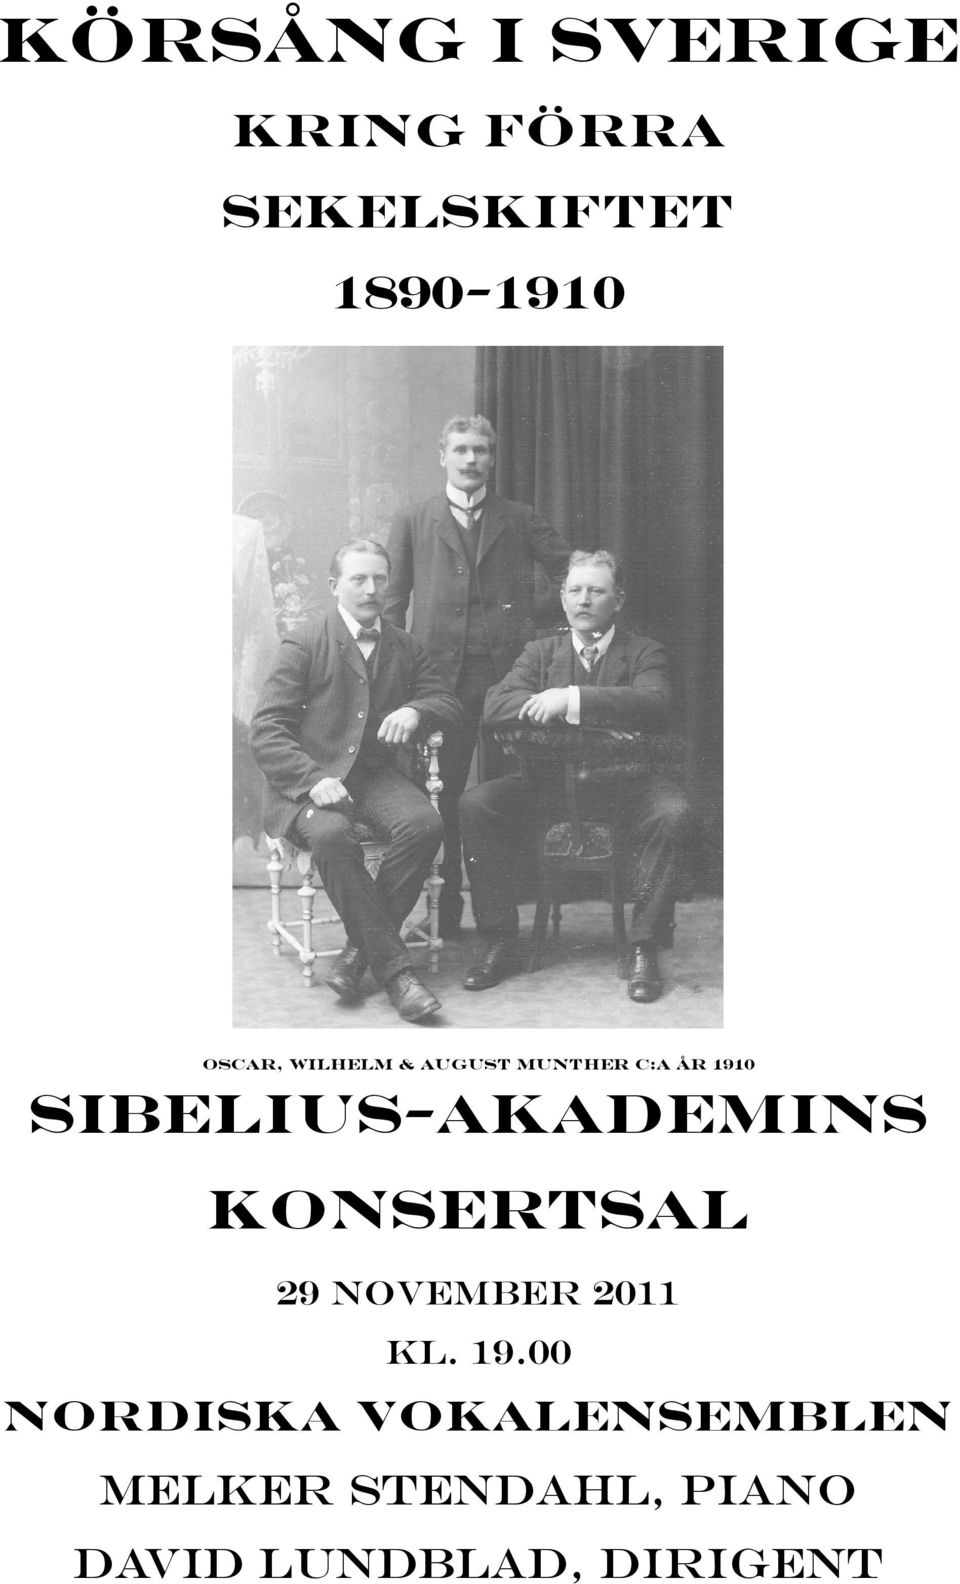 Sibelius-Akademins konsertsal 29 november 2011 kl. 19.